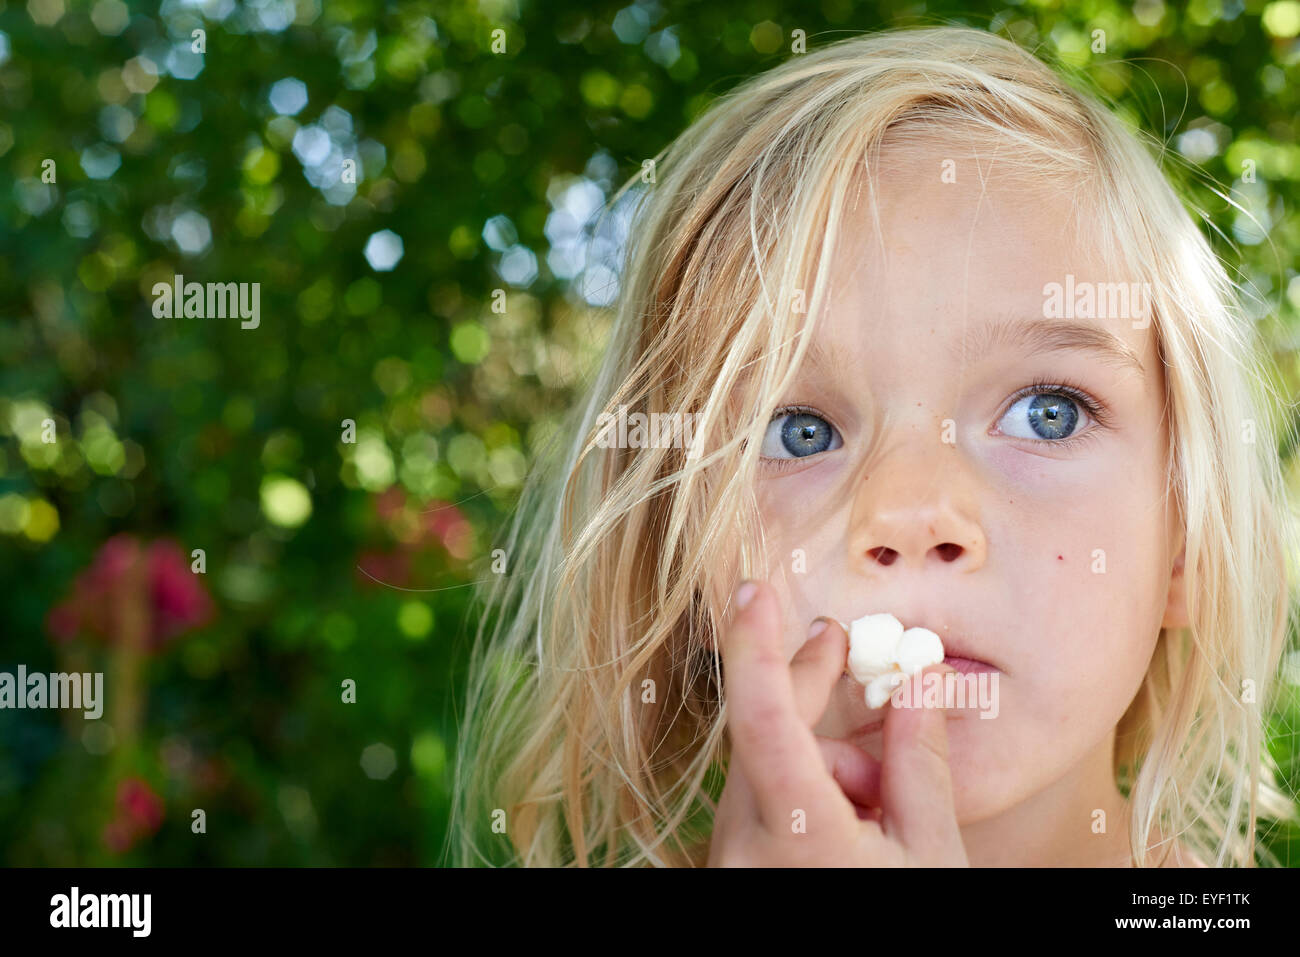 Child blond girl eating popcorn outside Stock Photo